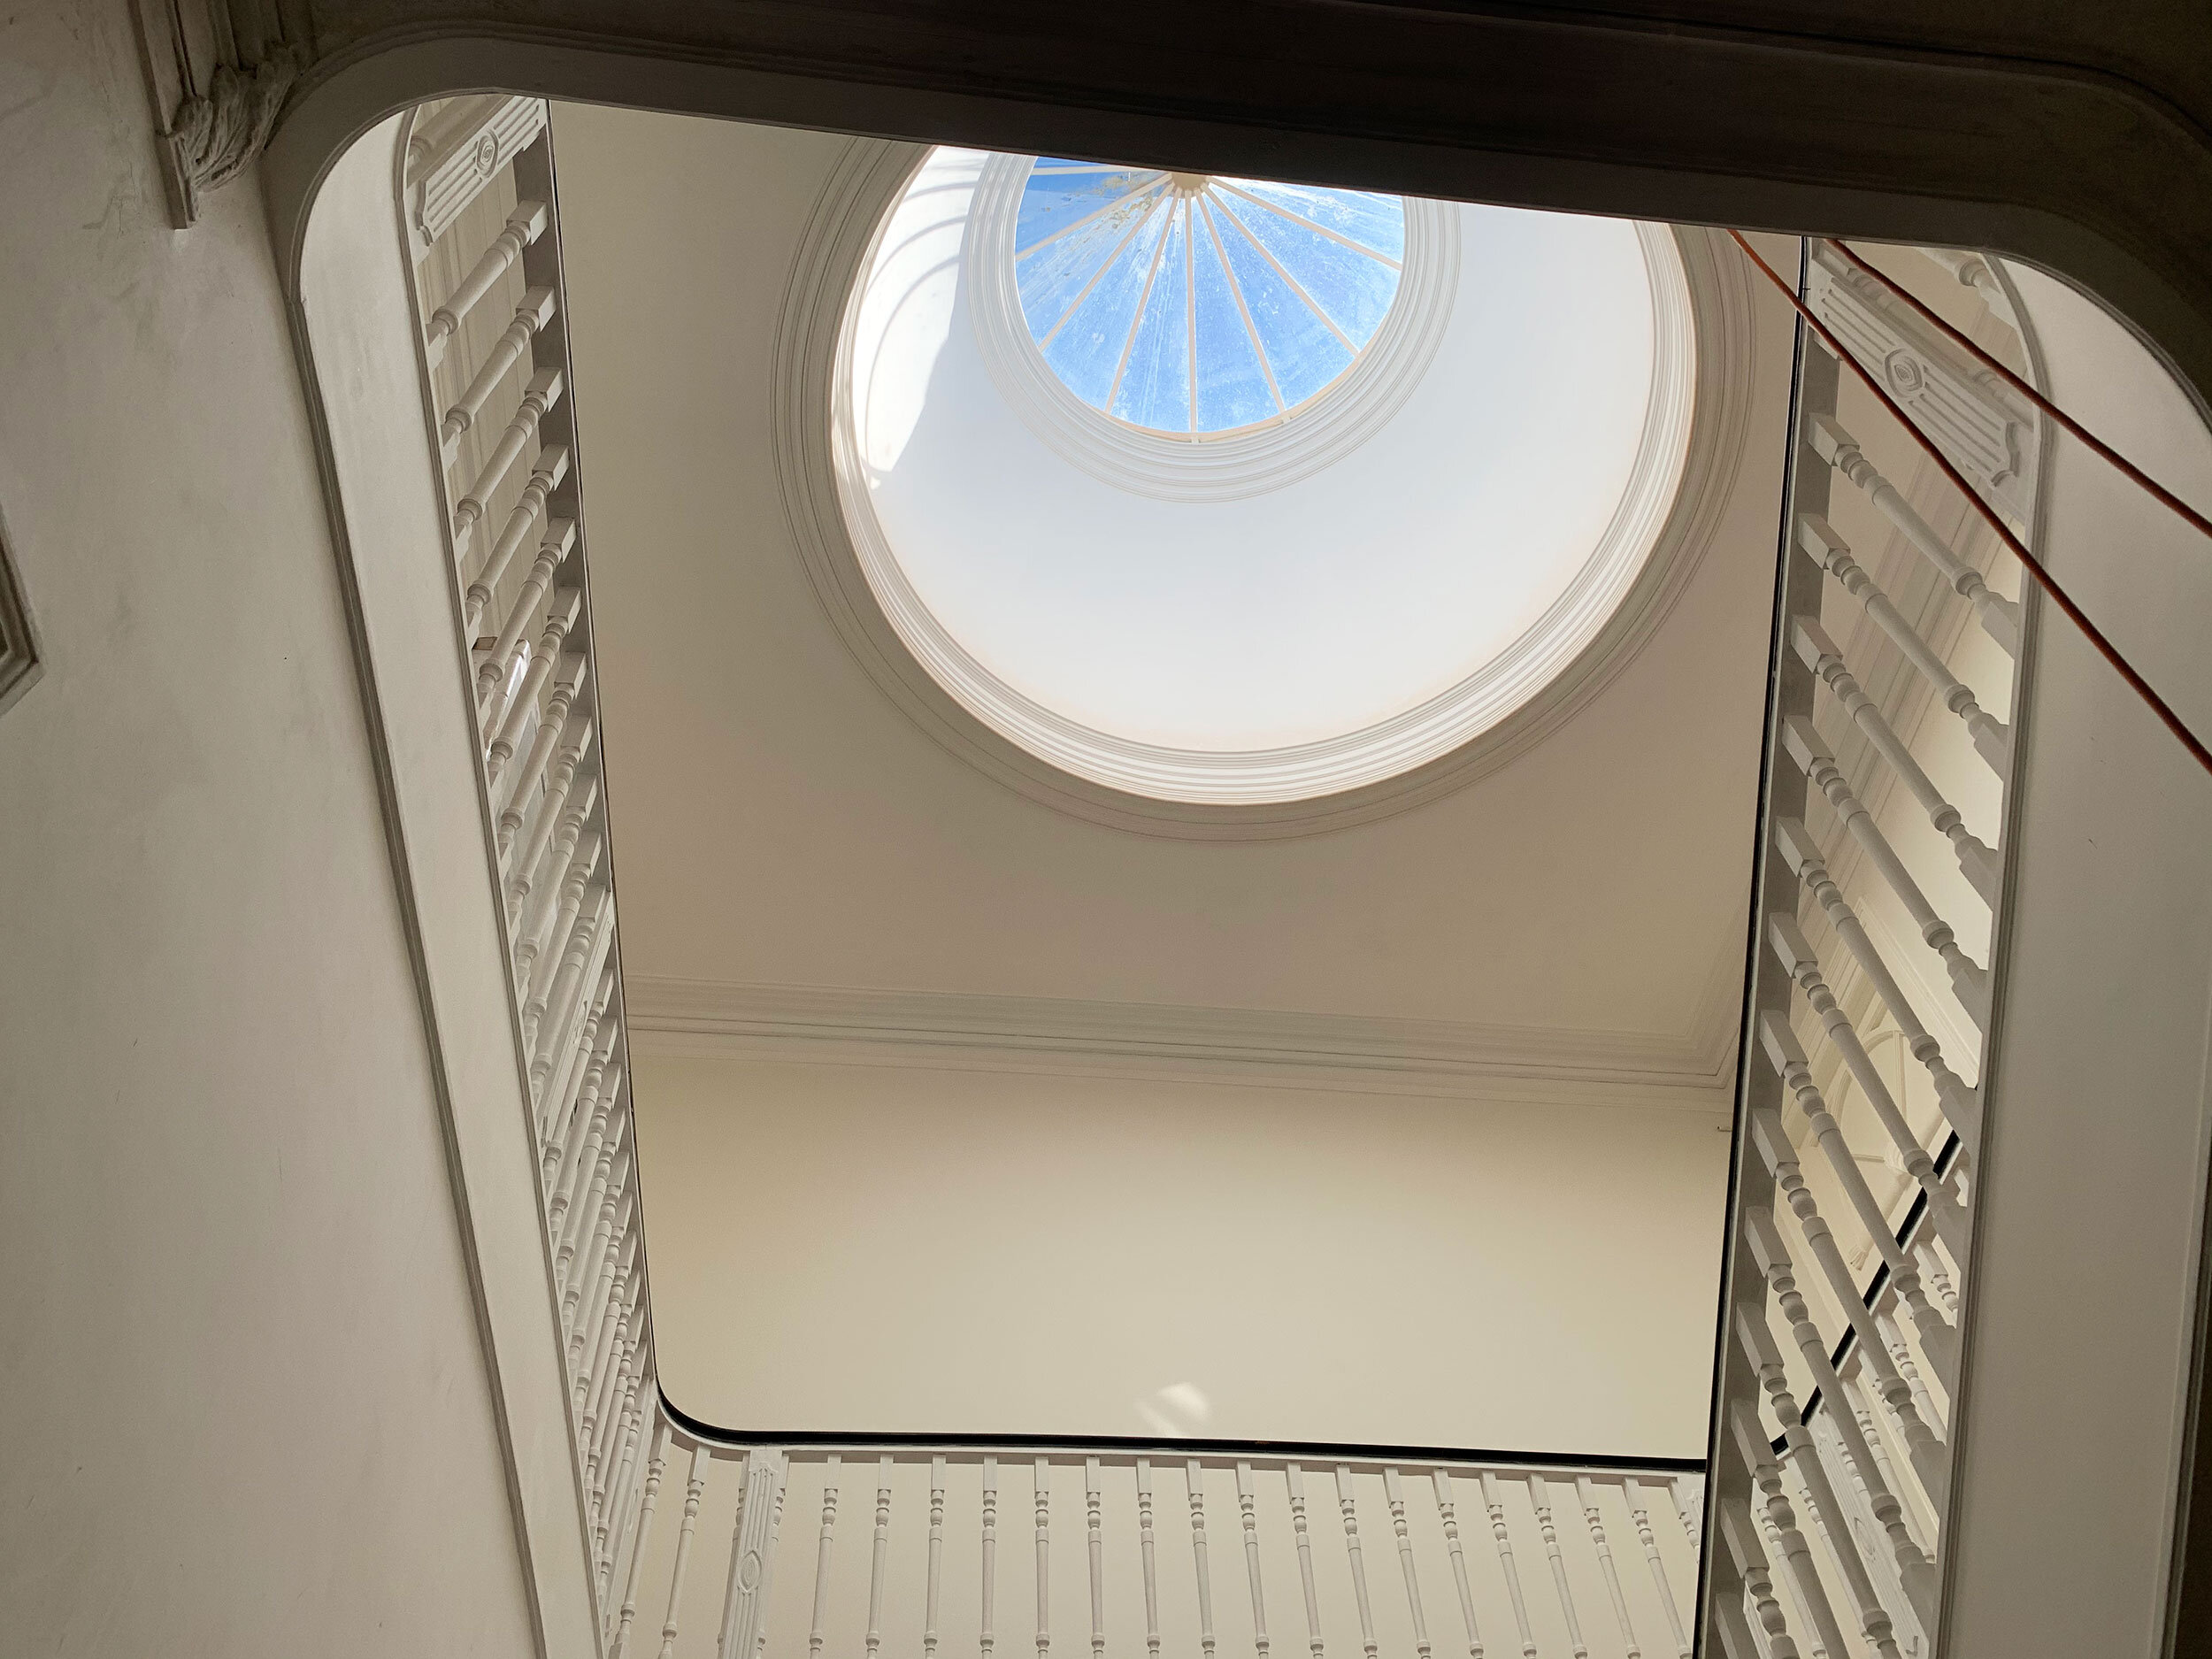 The restored skylight illuminating the stairways